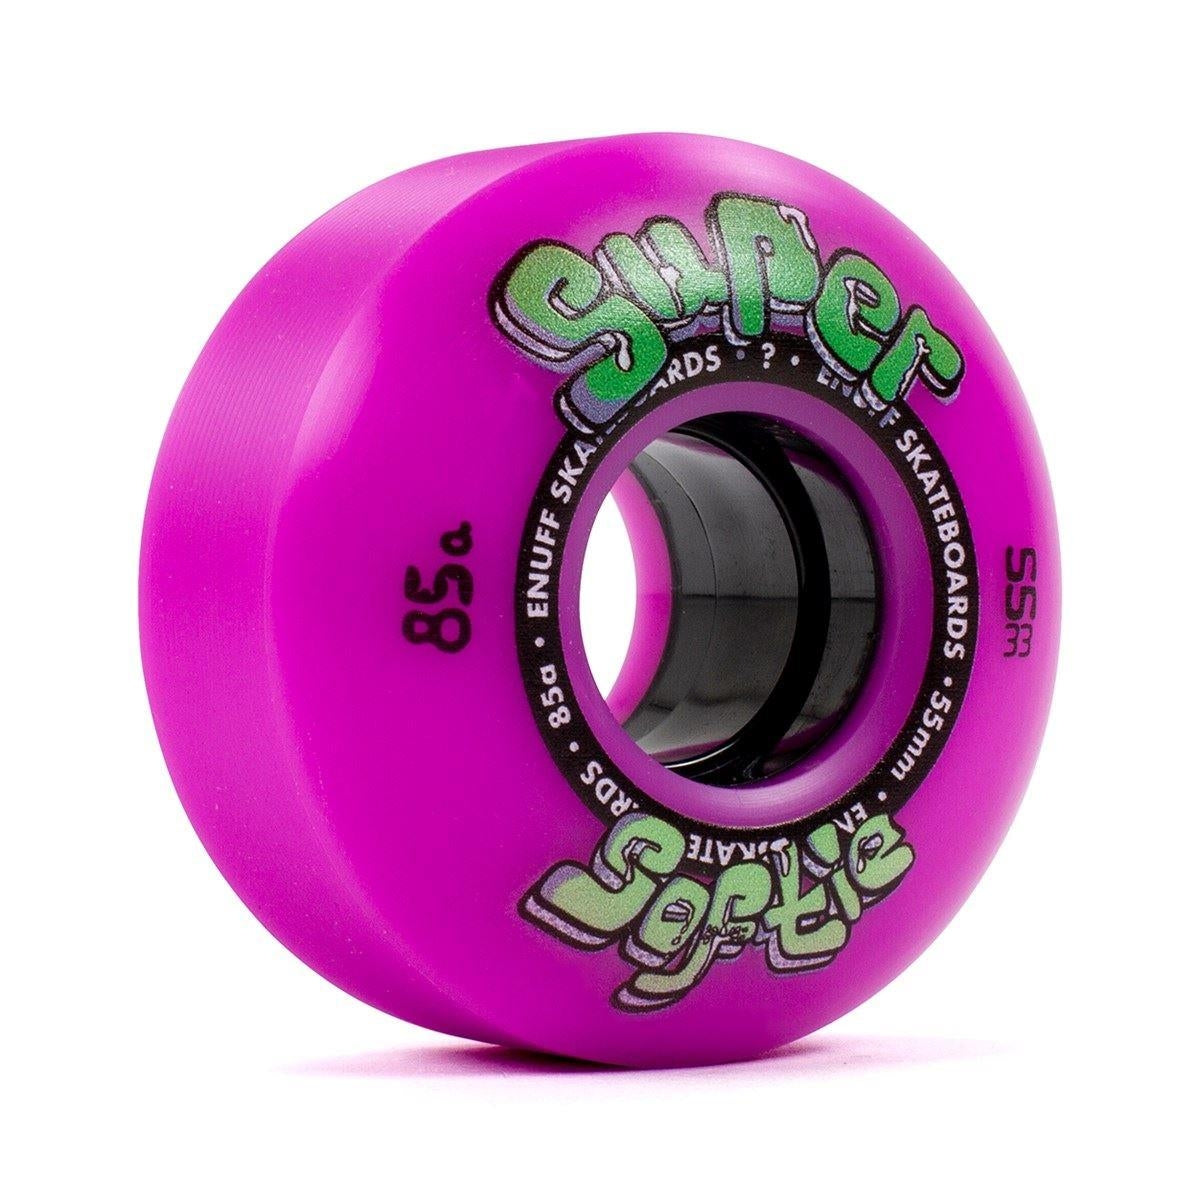 Enuff Super Softie Skateboard Wheels Purple 55mm